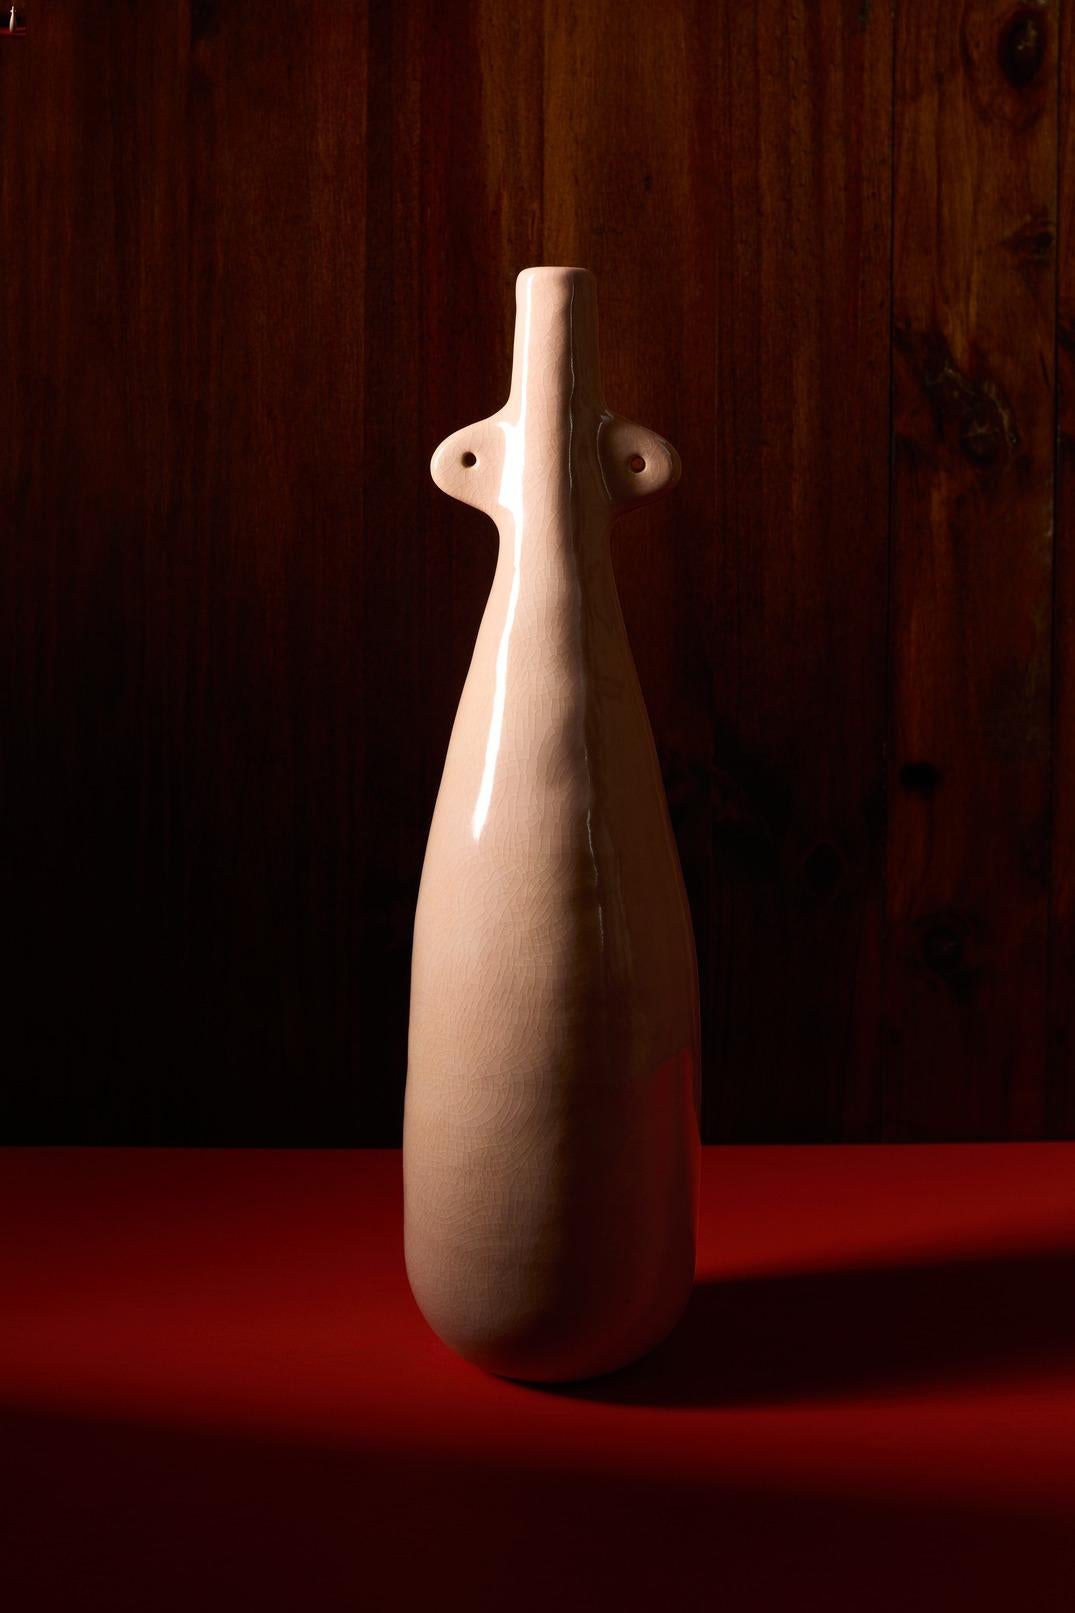 Pour la collection La Terra, Lemon a collaboré avec l'artiste de renom Jade Paton. Jade crée des sculptures contemporaines en argile. Sa principale source d'inspiration est le vaisseau antique, ainsi que les formes dans la Nature, l'architecture, le